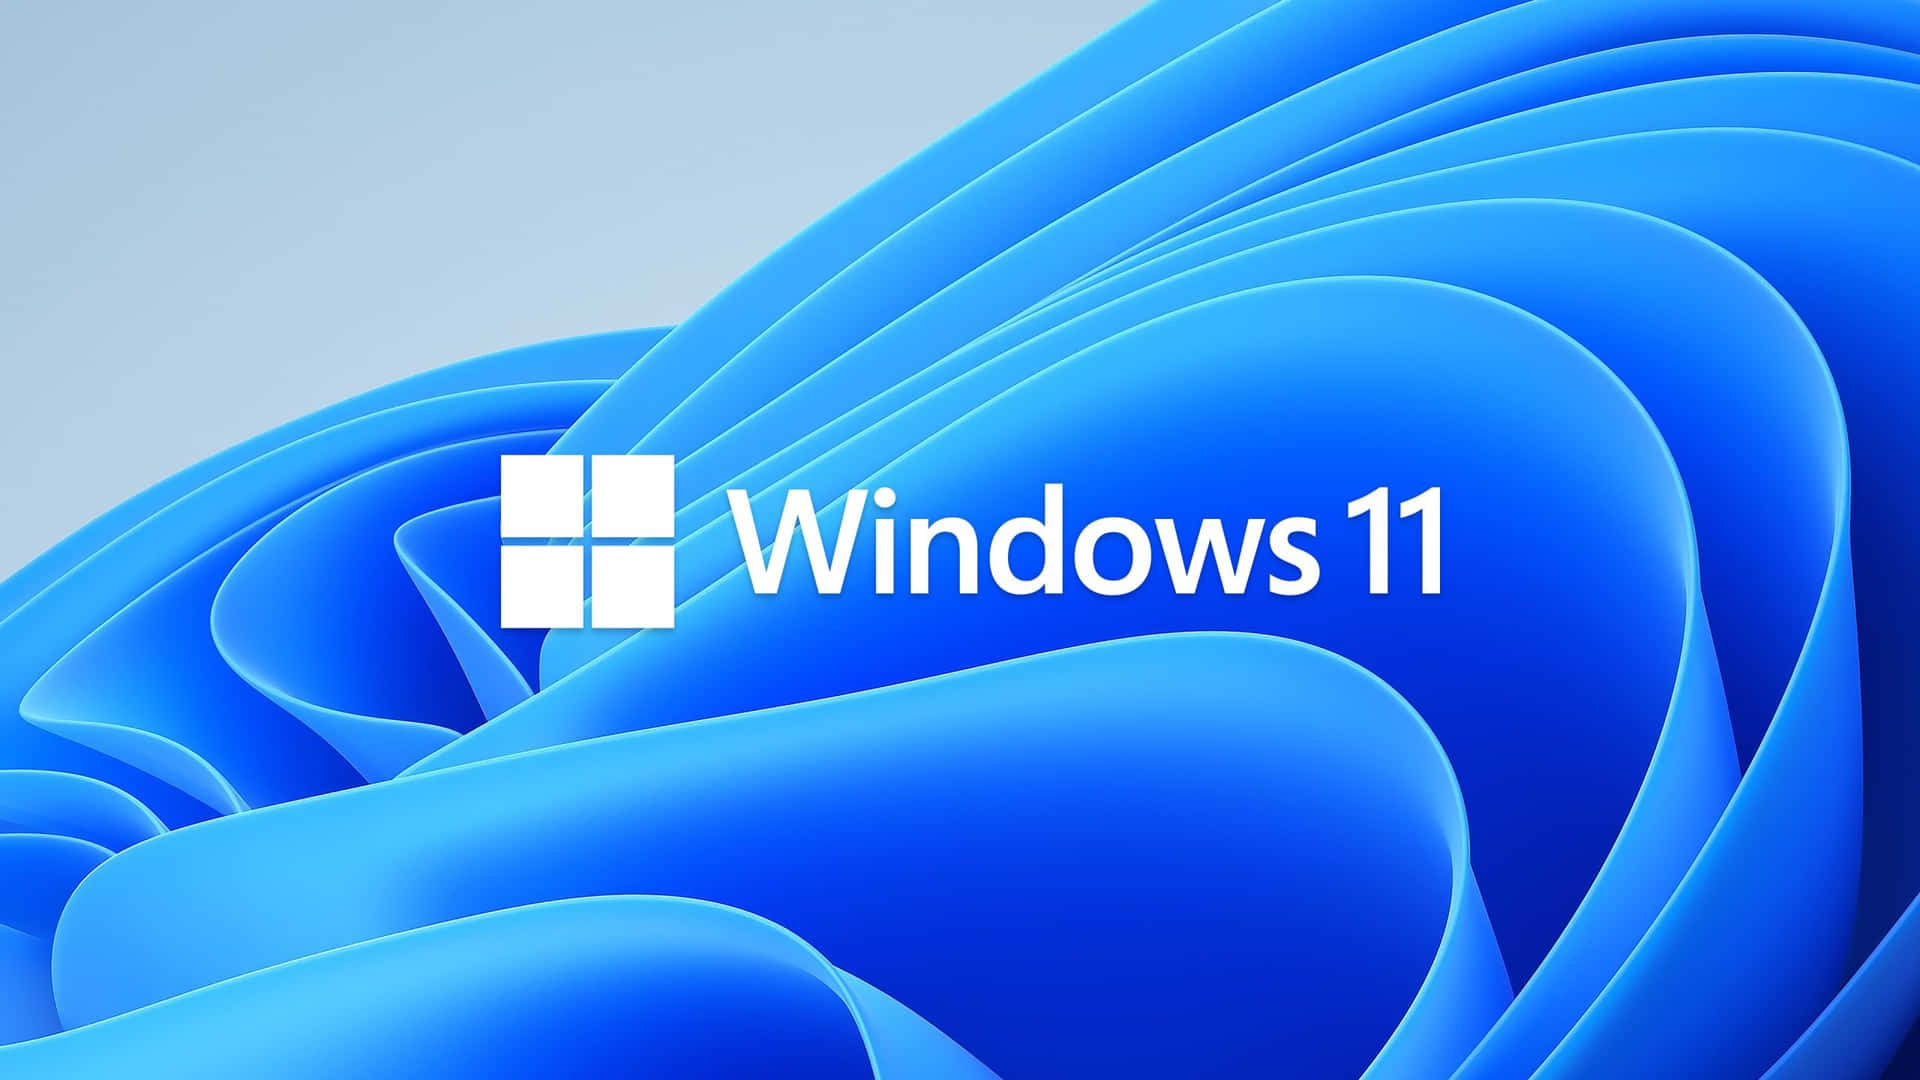 Redesigned Cumulative Windows Logo Update Wallpaper